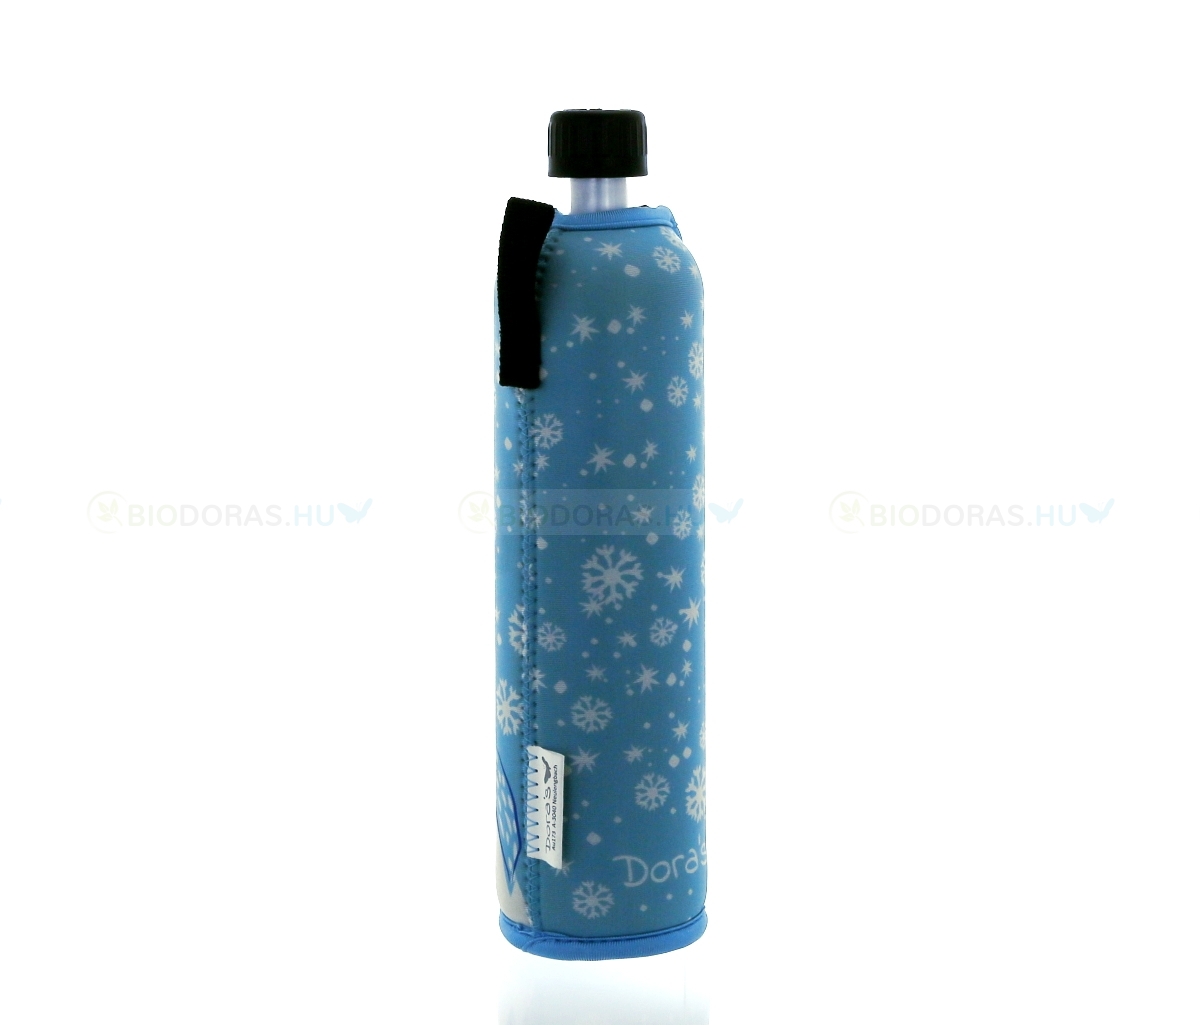 DORAS Üvegkulacs (üvegpalack) világoskék alapon, jegesmedve mintás neoprén huzattal - 500 ml